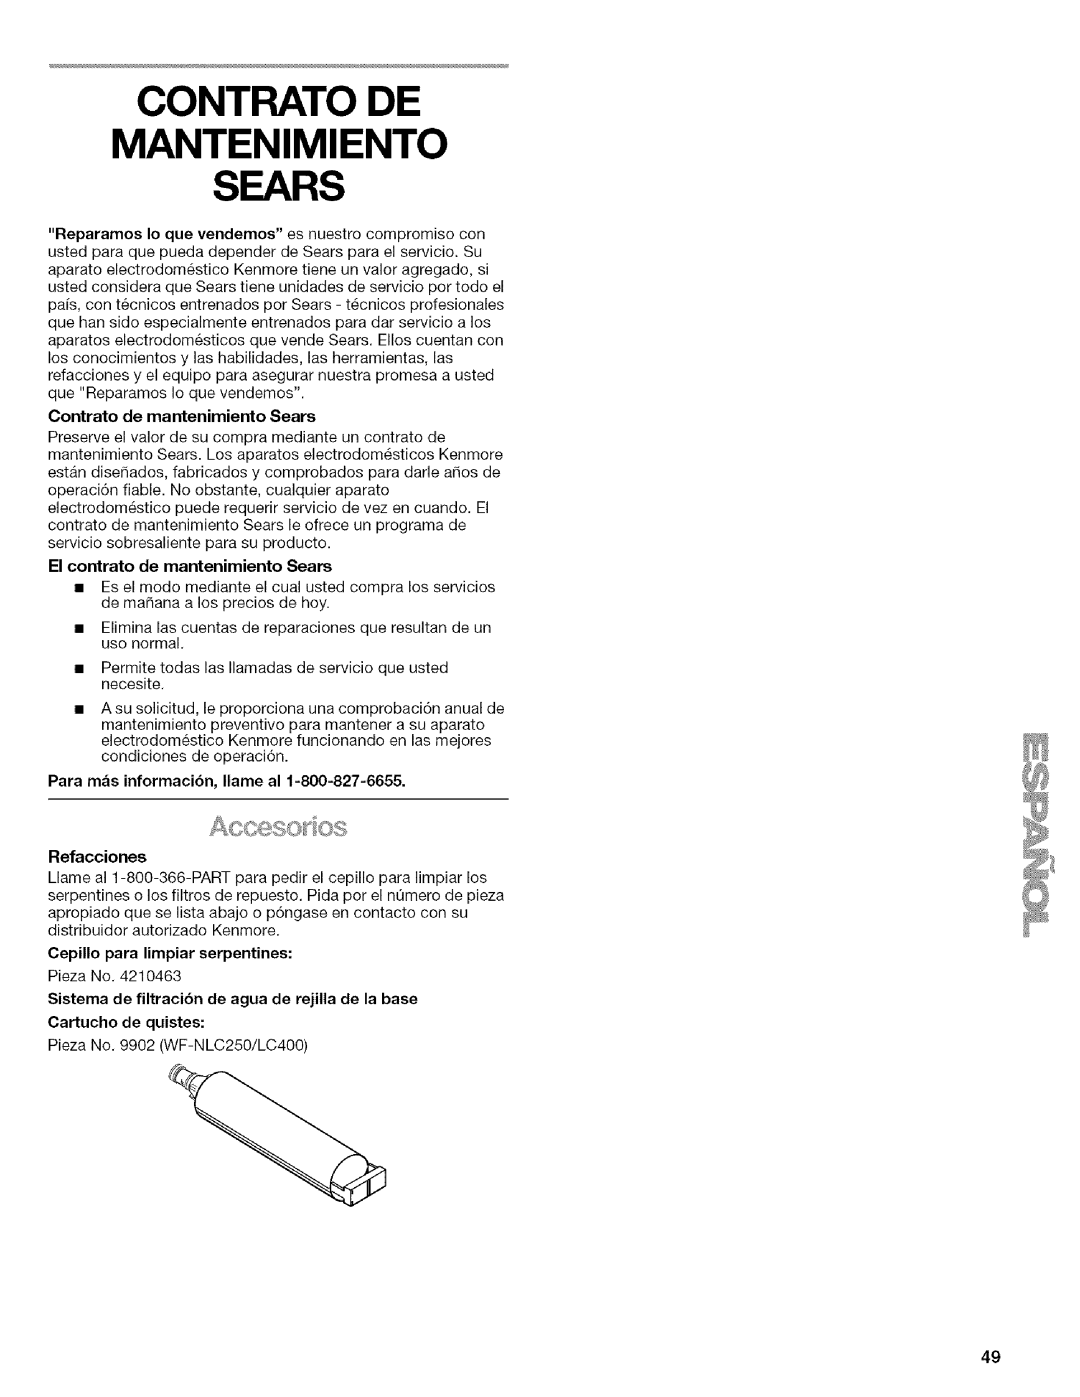 Kenmore 2205960 manual Contrato De Mantenimiento Sears, Contrato de mantenimiento Sears, El contrato de mantenimiento Sears 